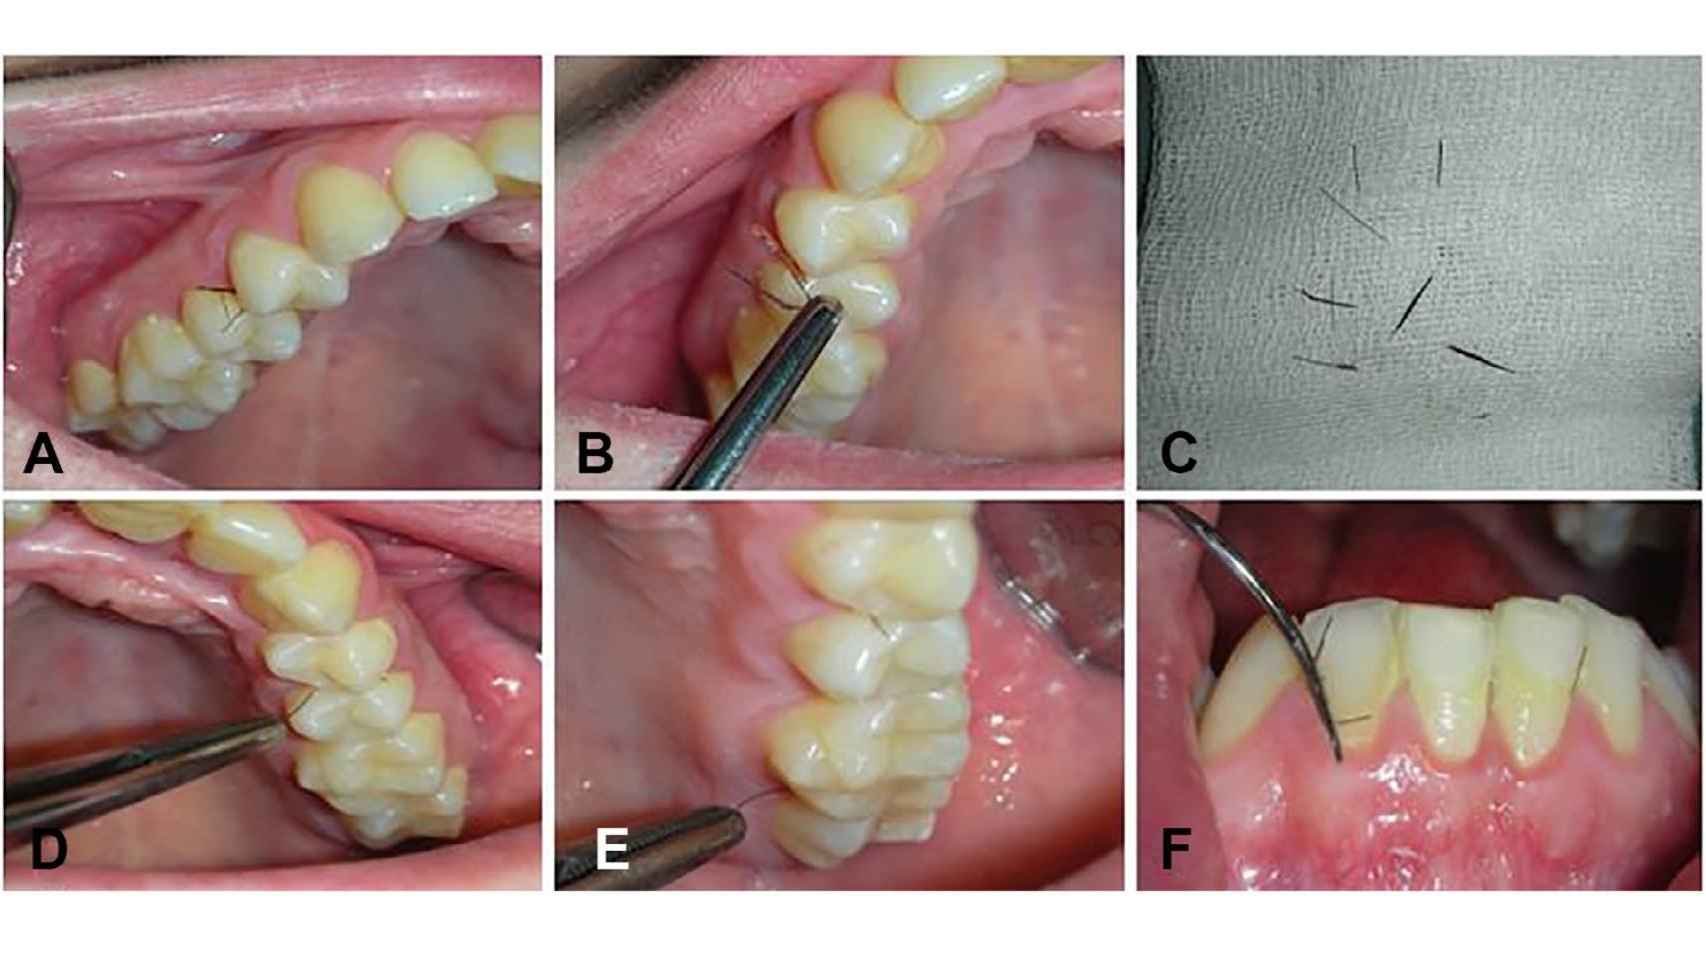 El tratamiento a la paciente afectada por hirsutismo gingival. Oral Surgery, Oral Medicine, Oral Pathology, Oral Radiology.